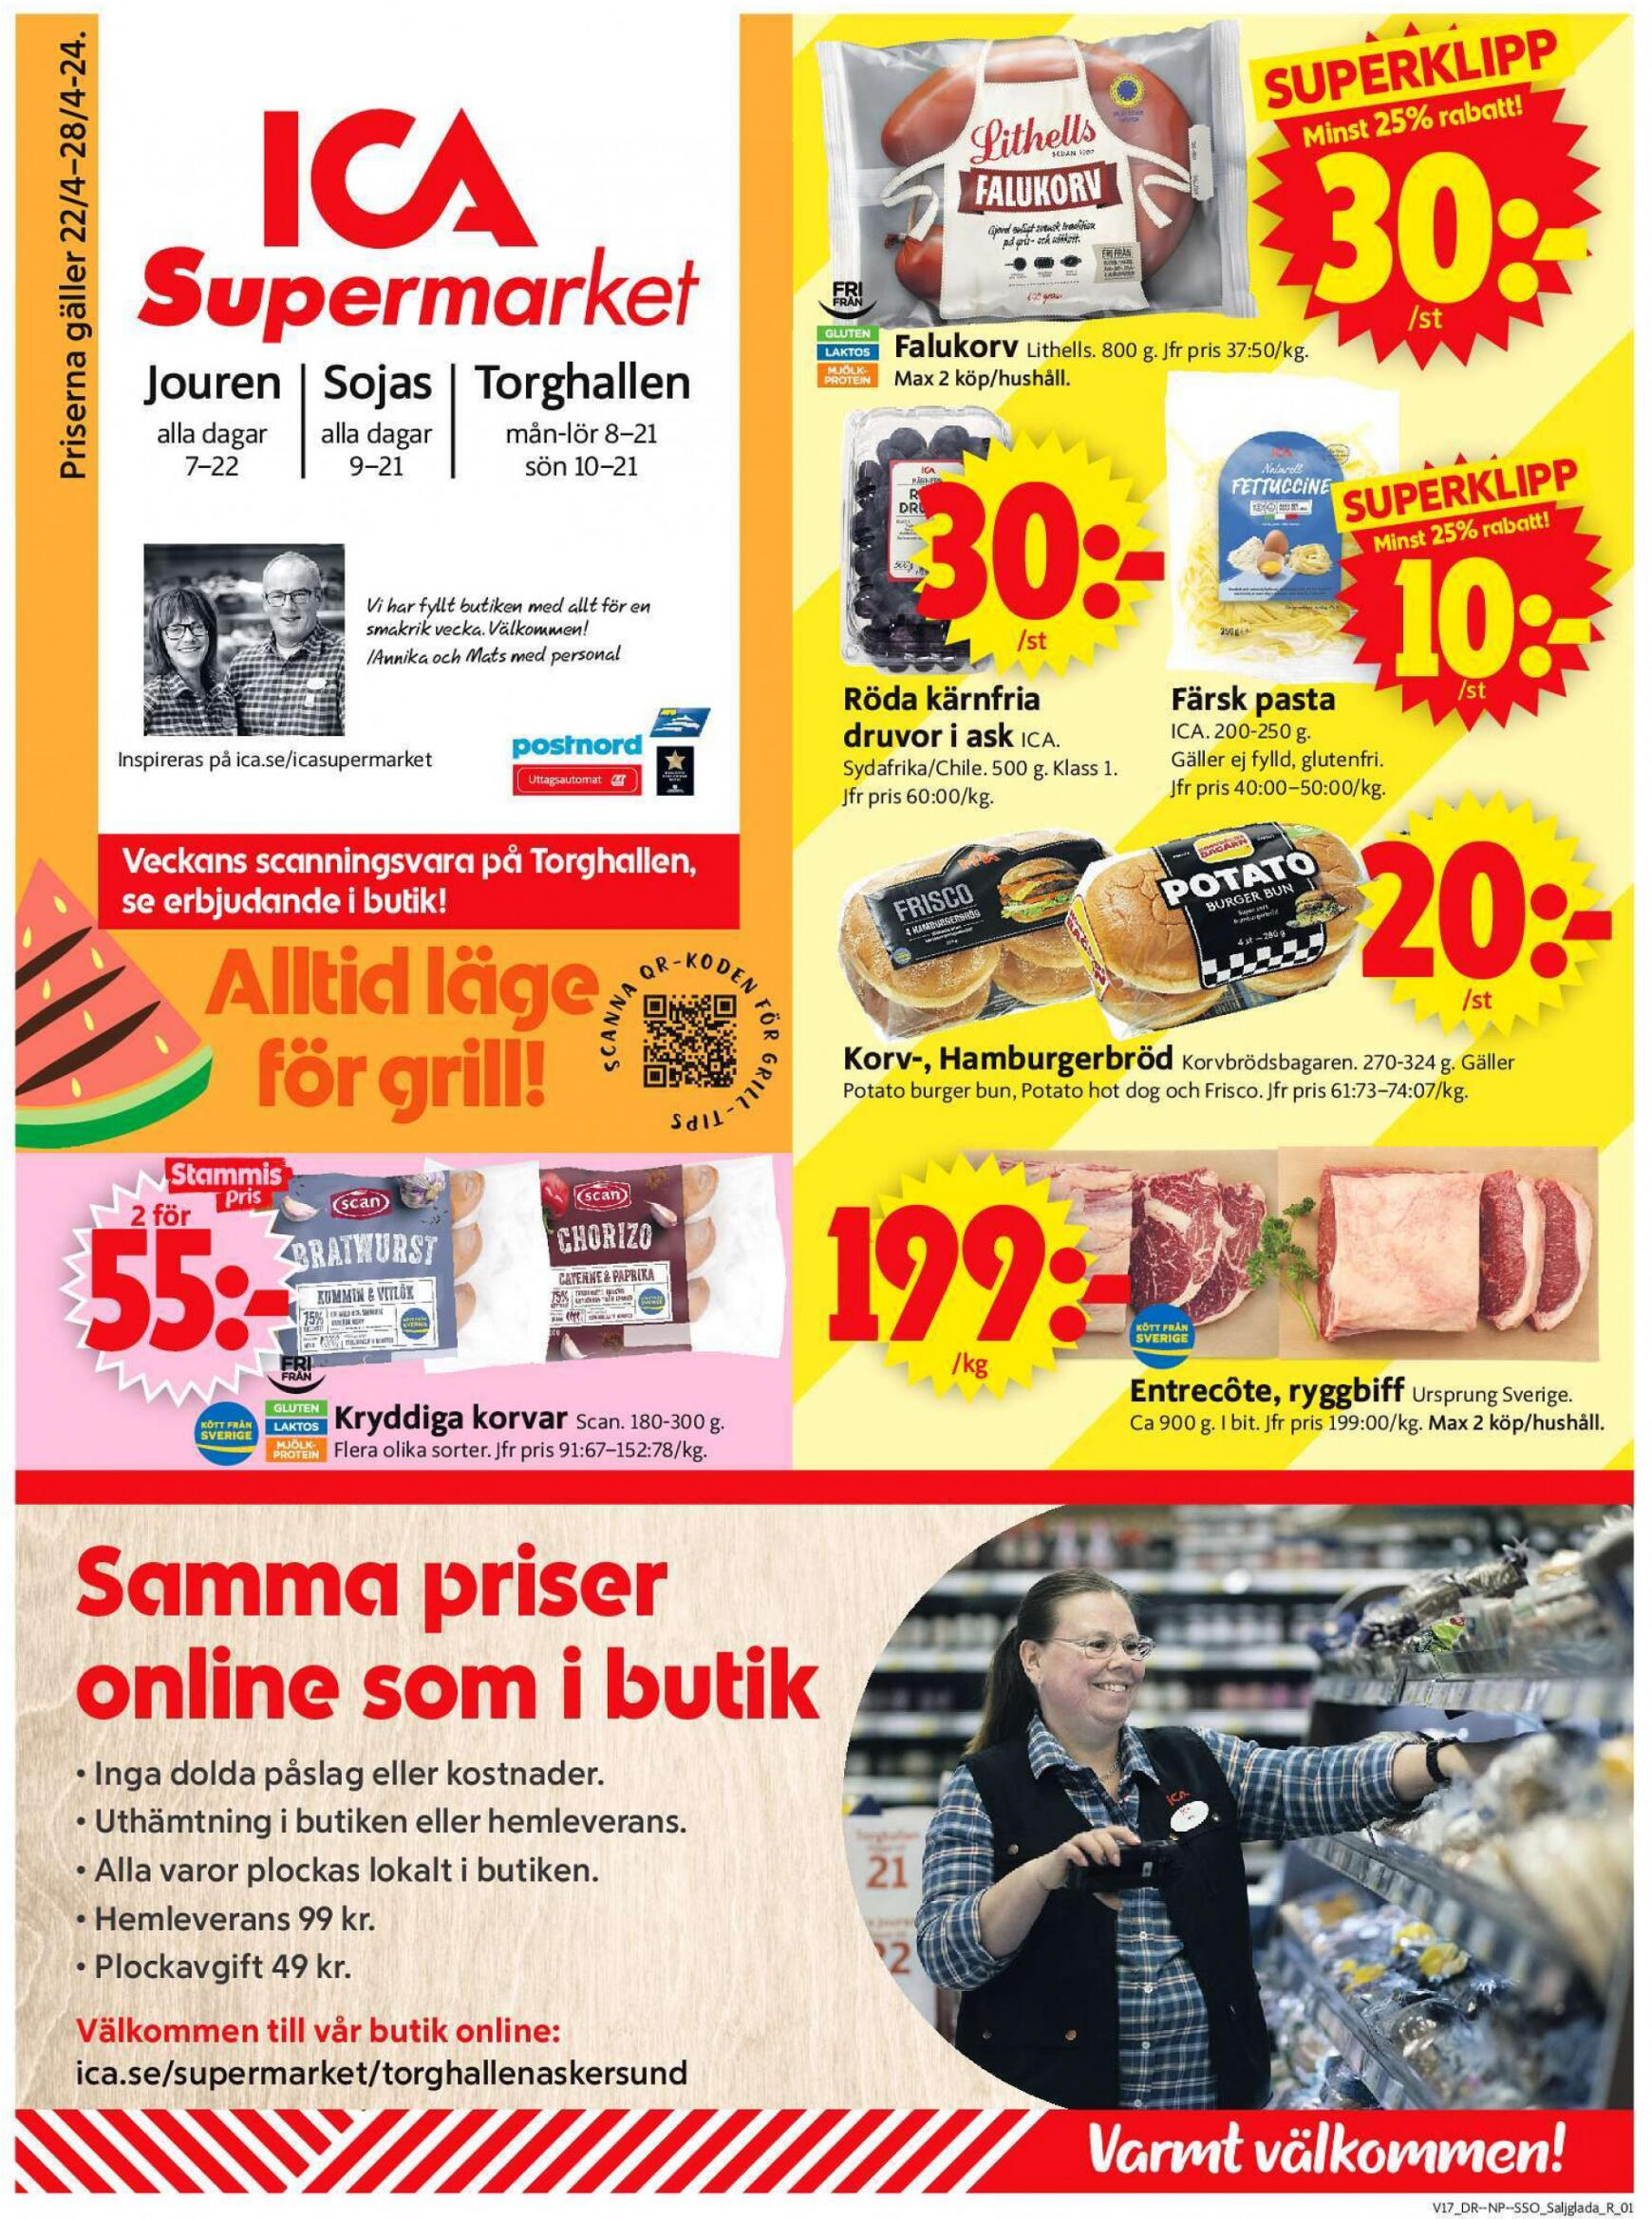 ica-supermarket - Flyer ICA Supermarket current 22.04. - 28.04. - page: 1